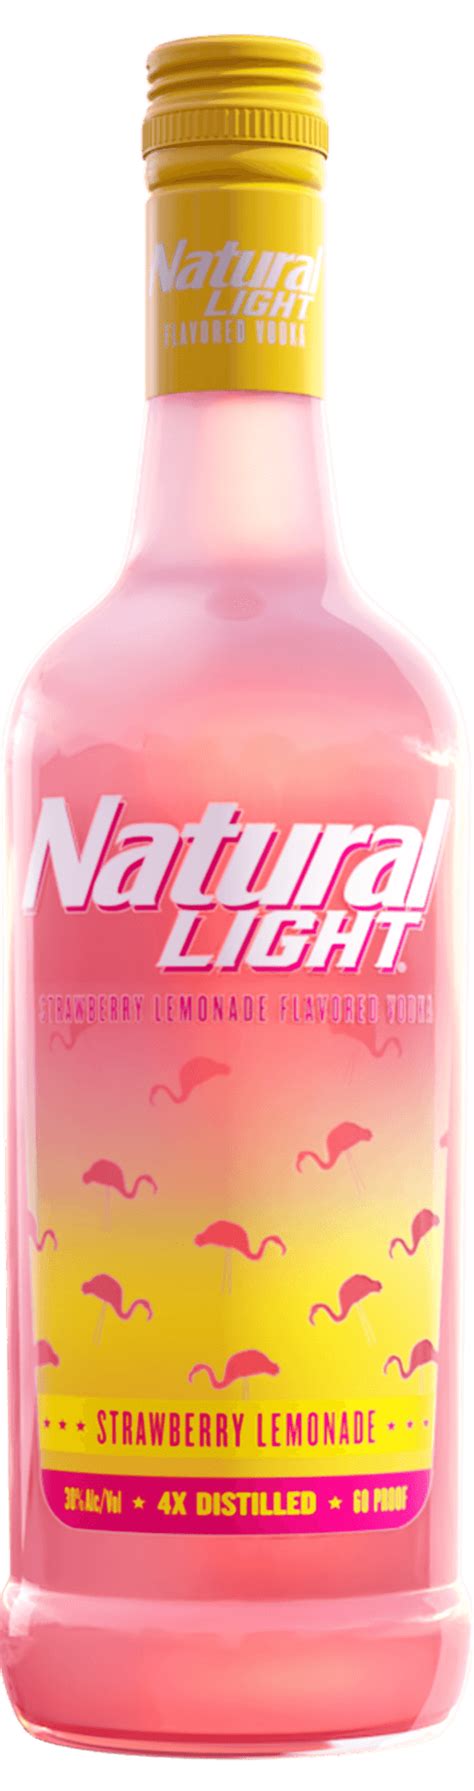 Review Natural Light Strawberry Lemonade Vodka Best Tasting Spirits